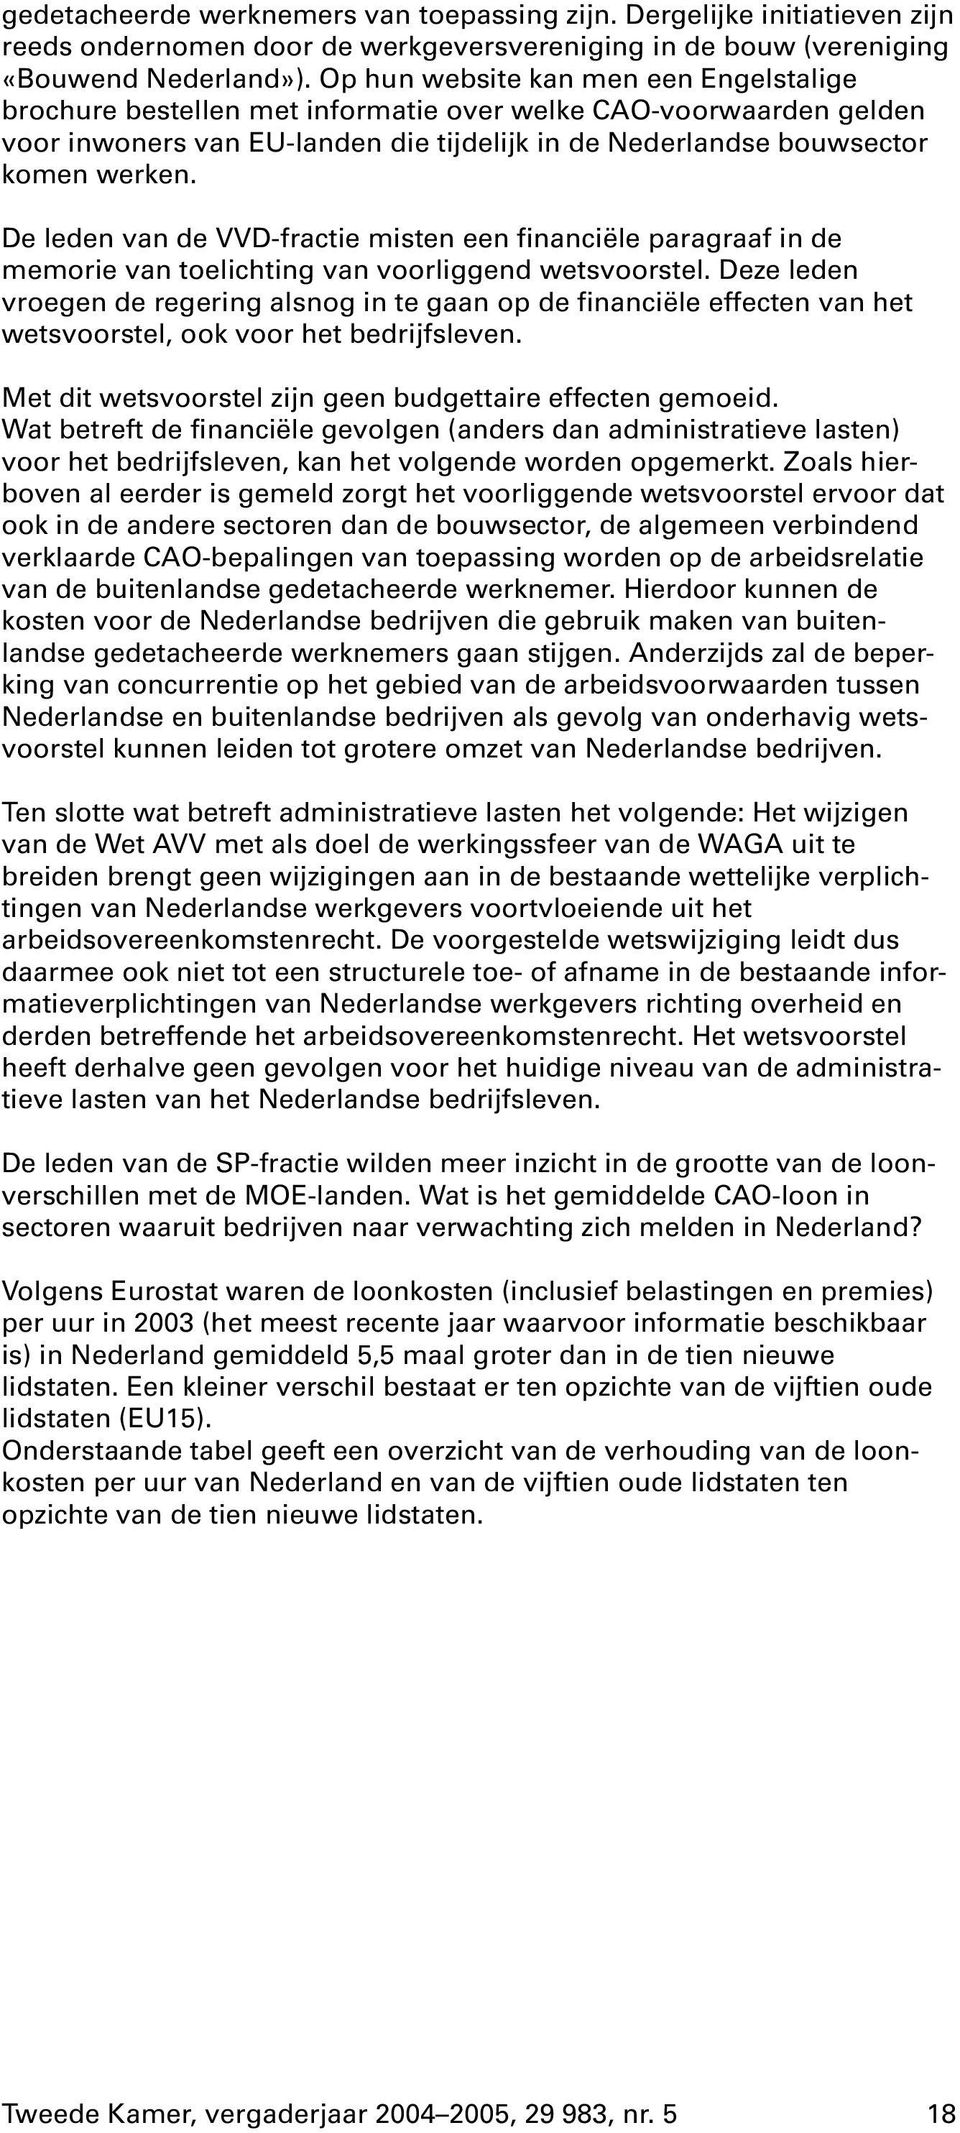 De leden van de VVD-fractie misten een financiële paragraaf in de memorie van toelichting van voorliggend wetsvoorstel.